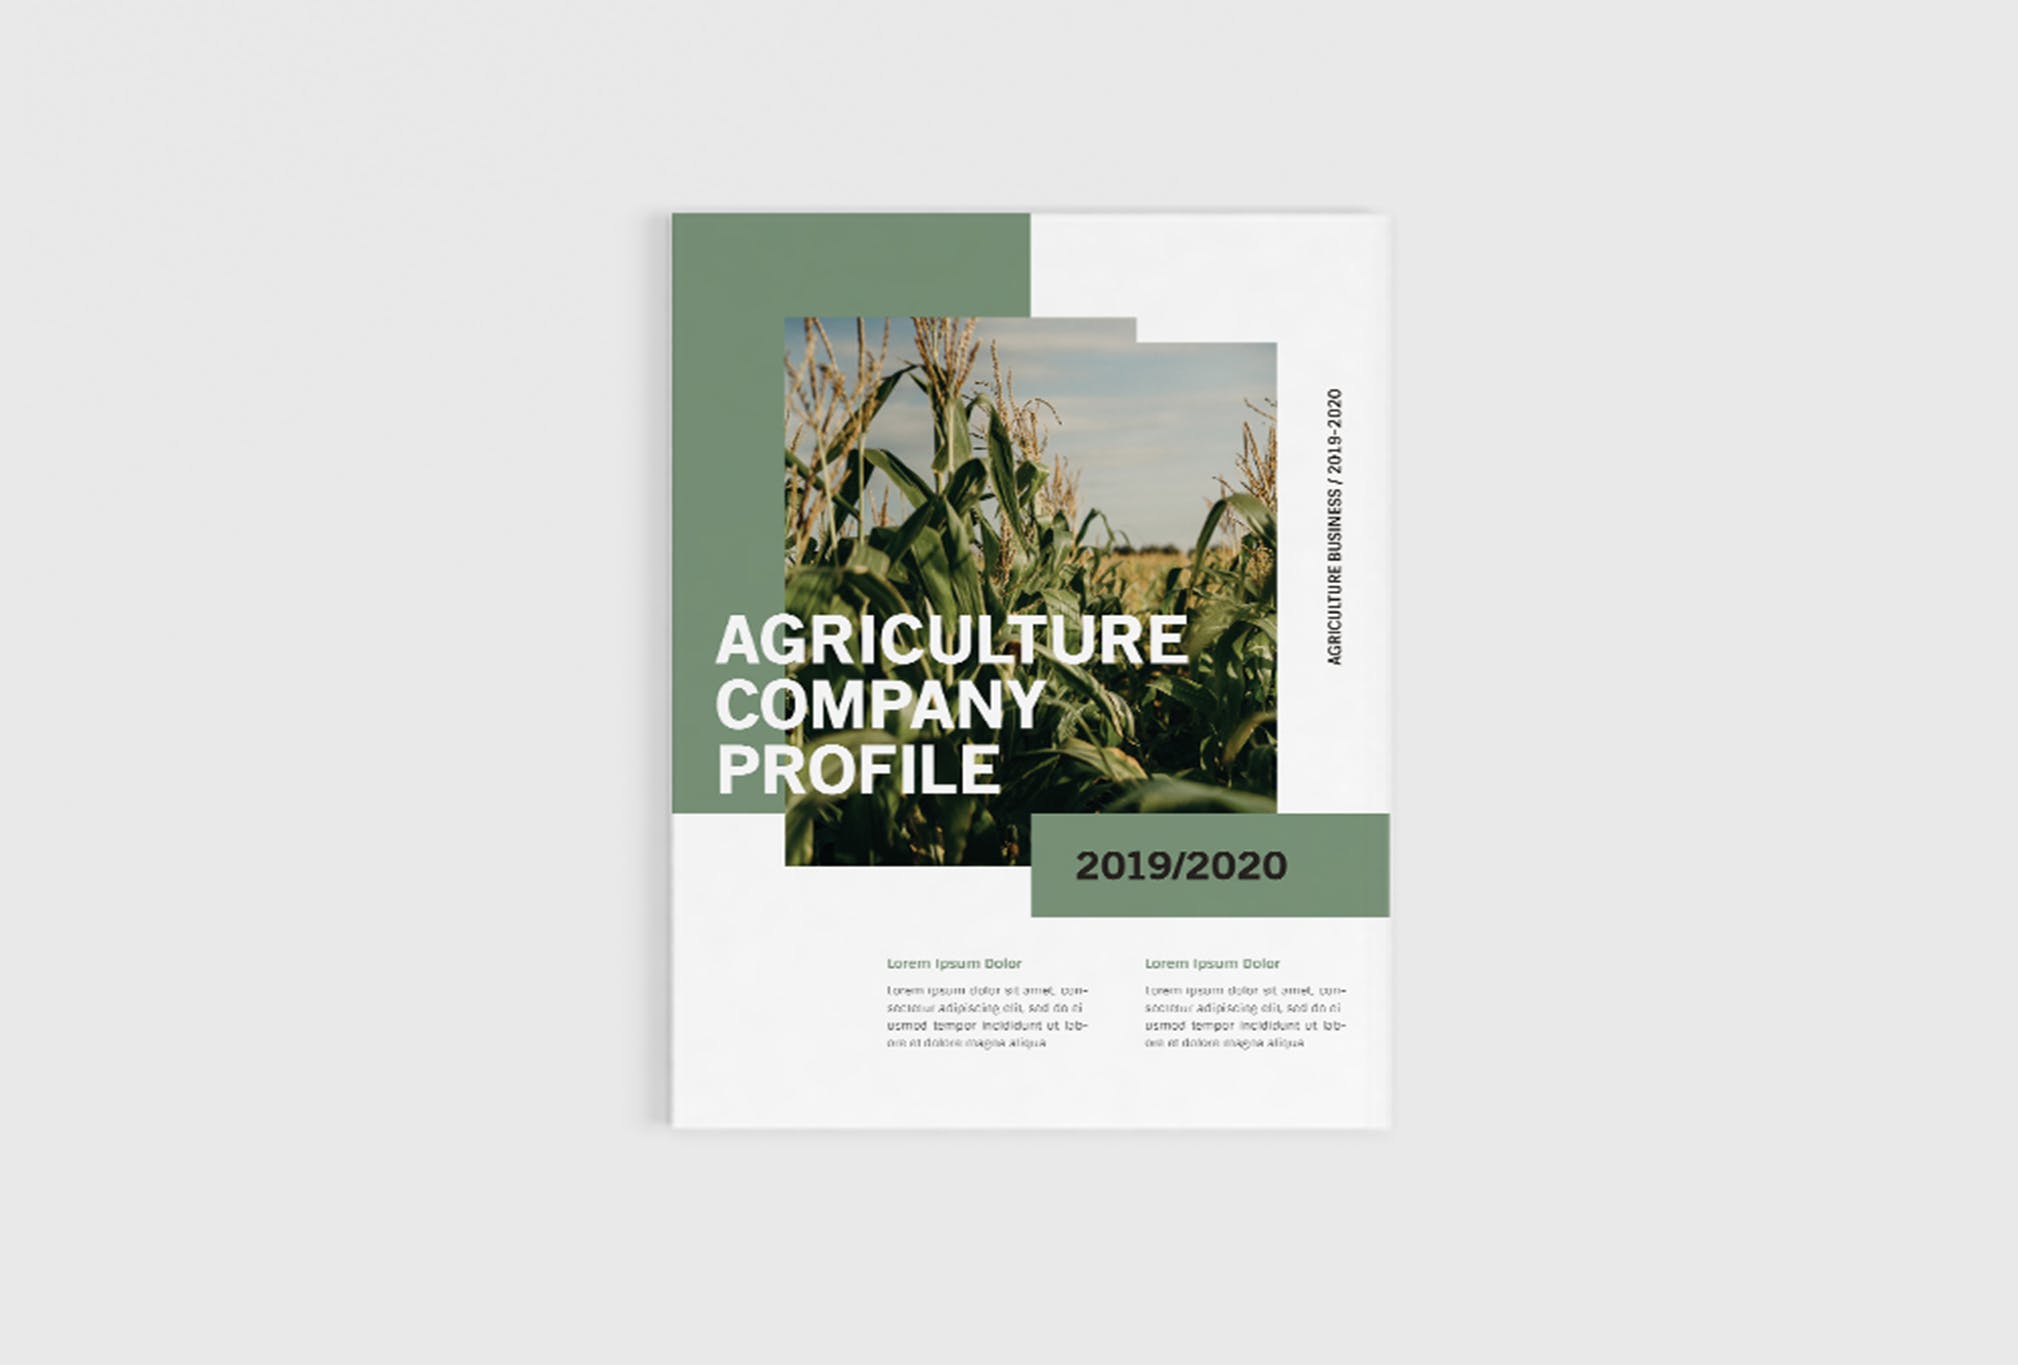 农业绿色食品公司简介企业画册设计模板 Agriculture Company Profile插图(1)